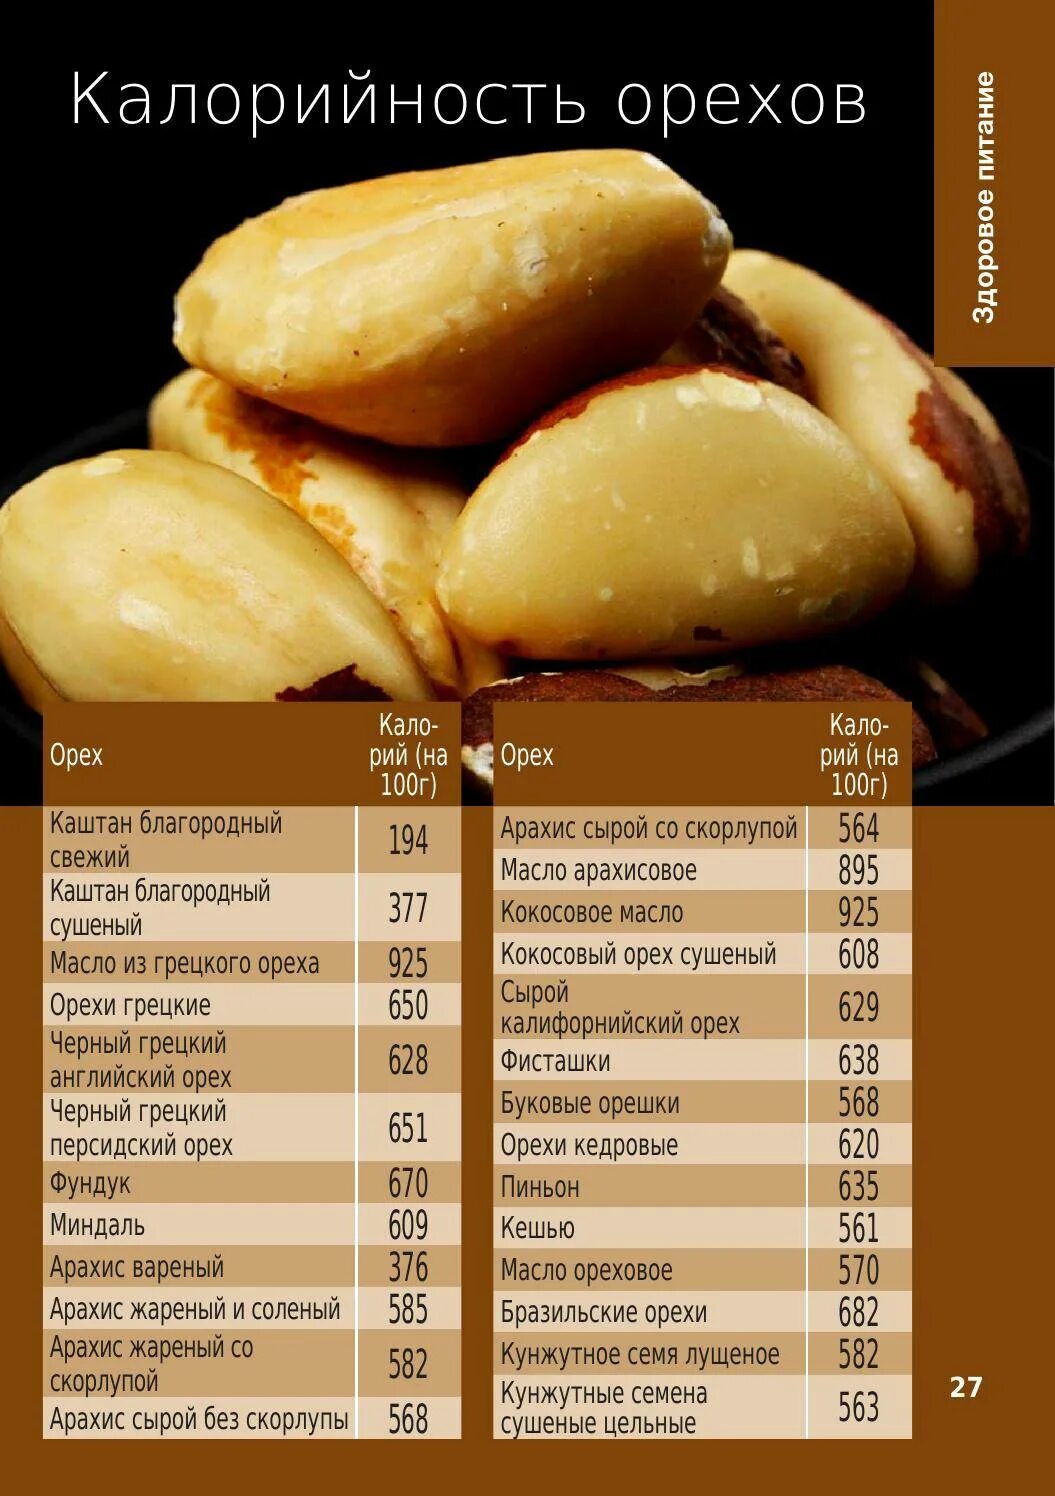 Орехи энергетическая ценность таблица. Миндаль орех калорийность 1 шт. Калорийность 1 грецо ореха грецкого. Энергетическая ценность кешью миндаля и фундука.